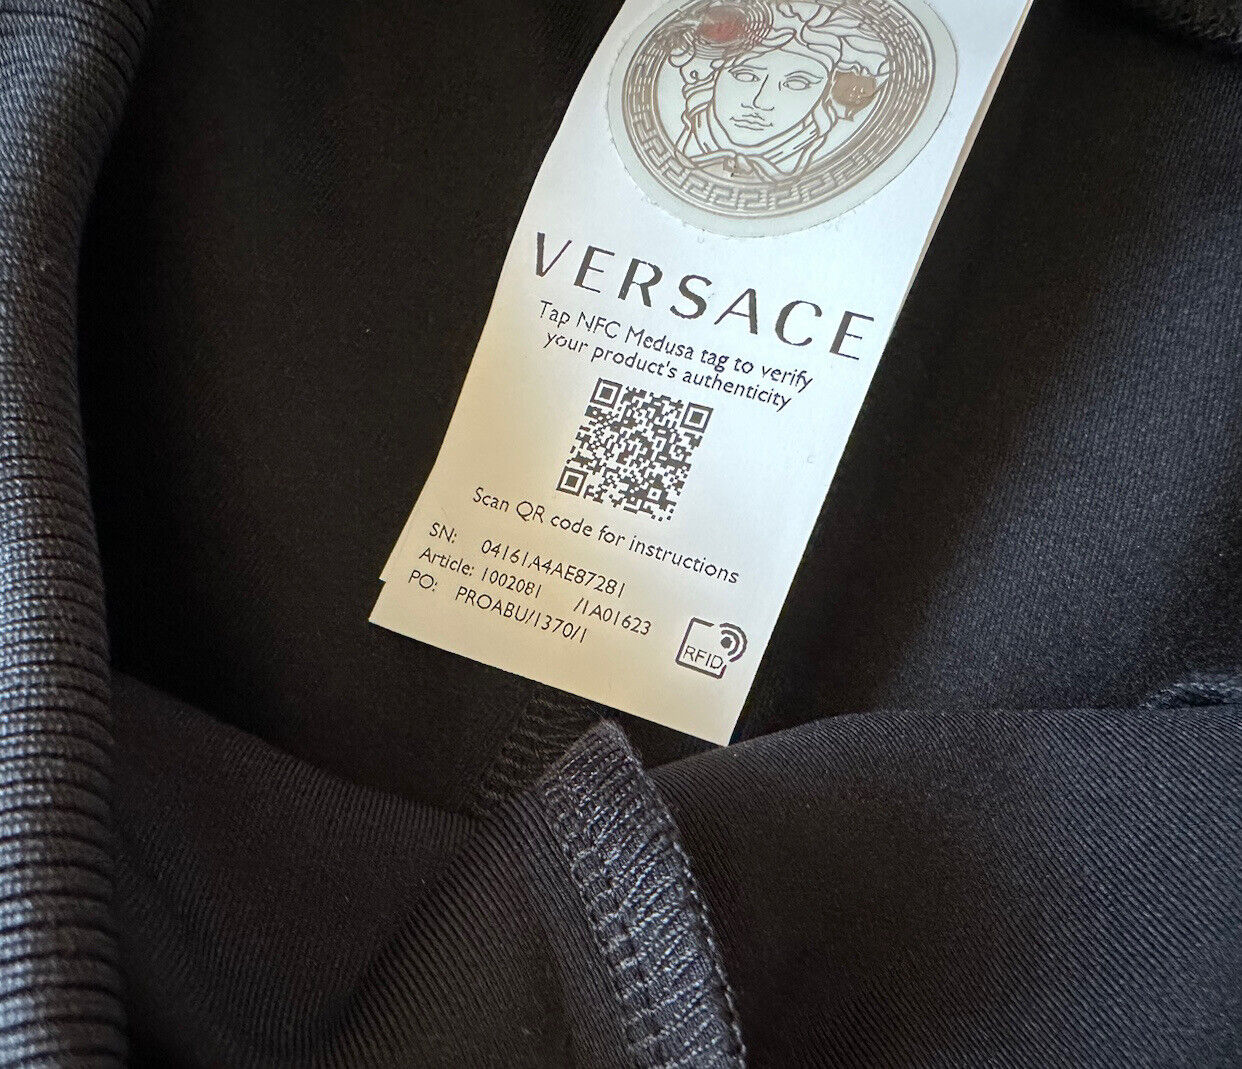 NWT $625 Versace Женские черные брюки-джоггеры с принтом Greca, размер 5, Италия 1002081 